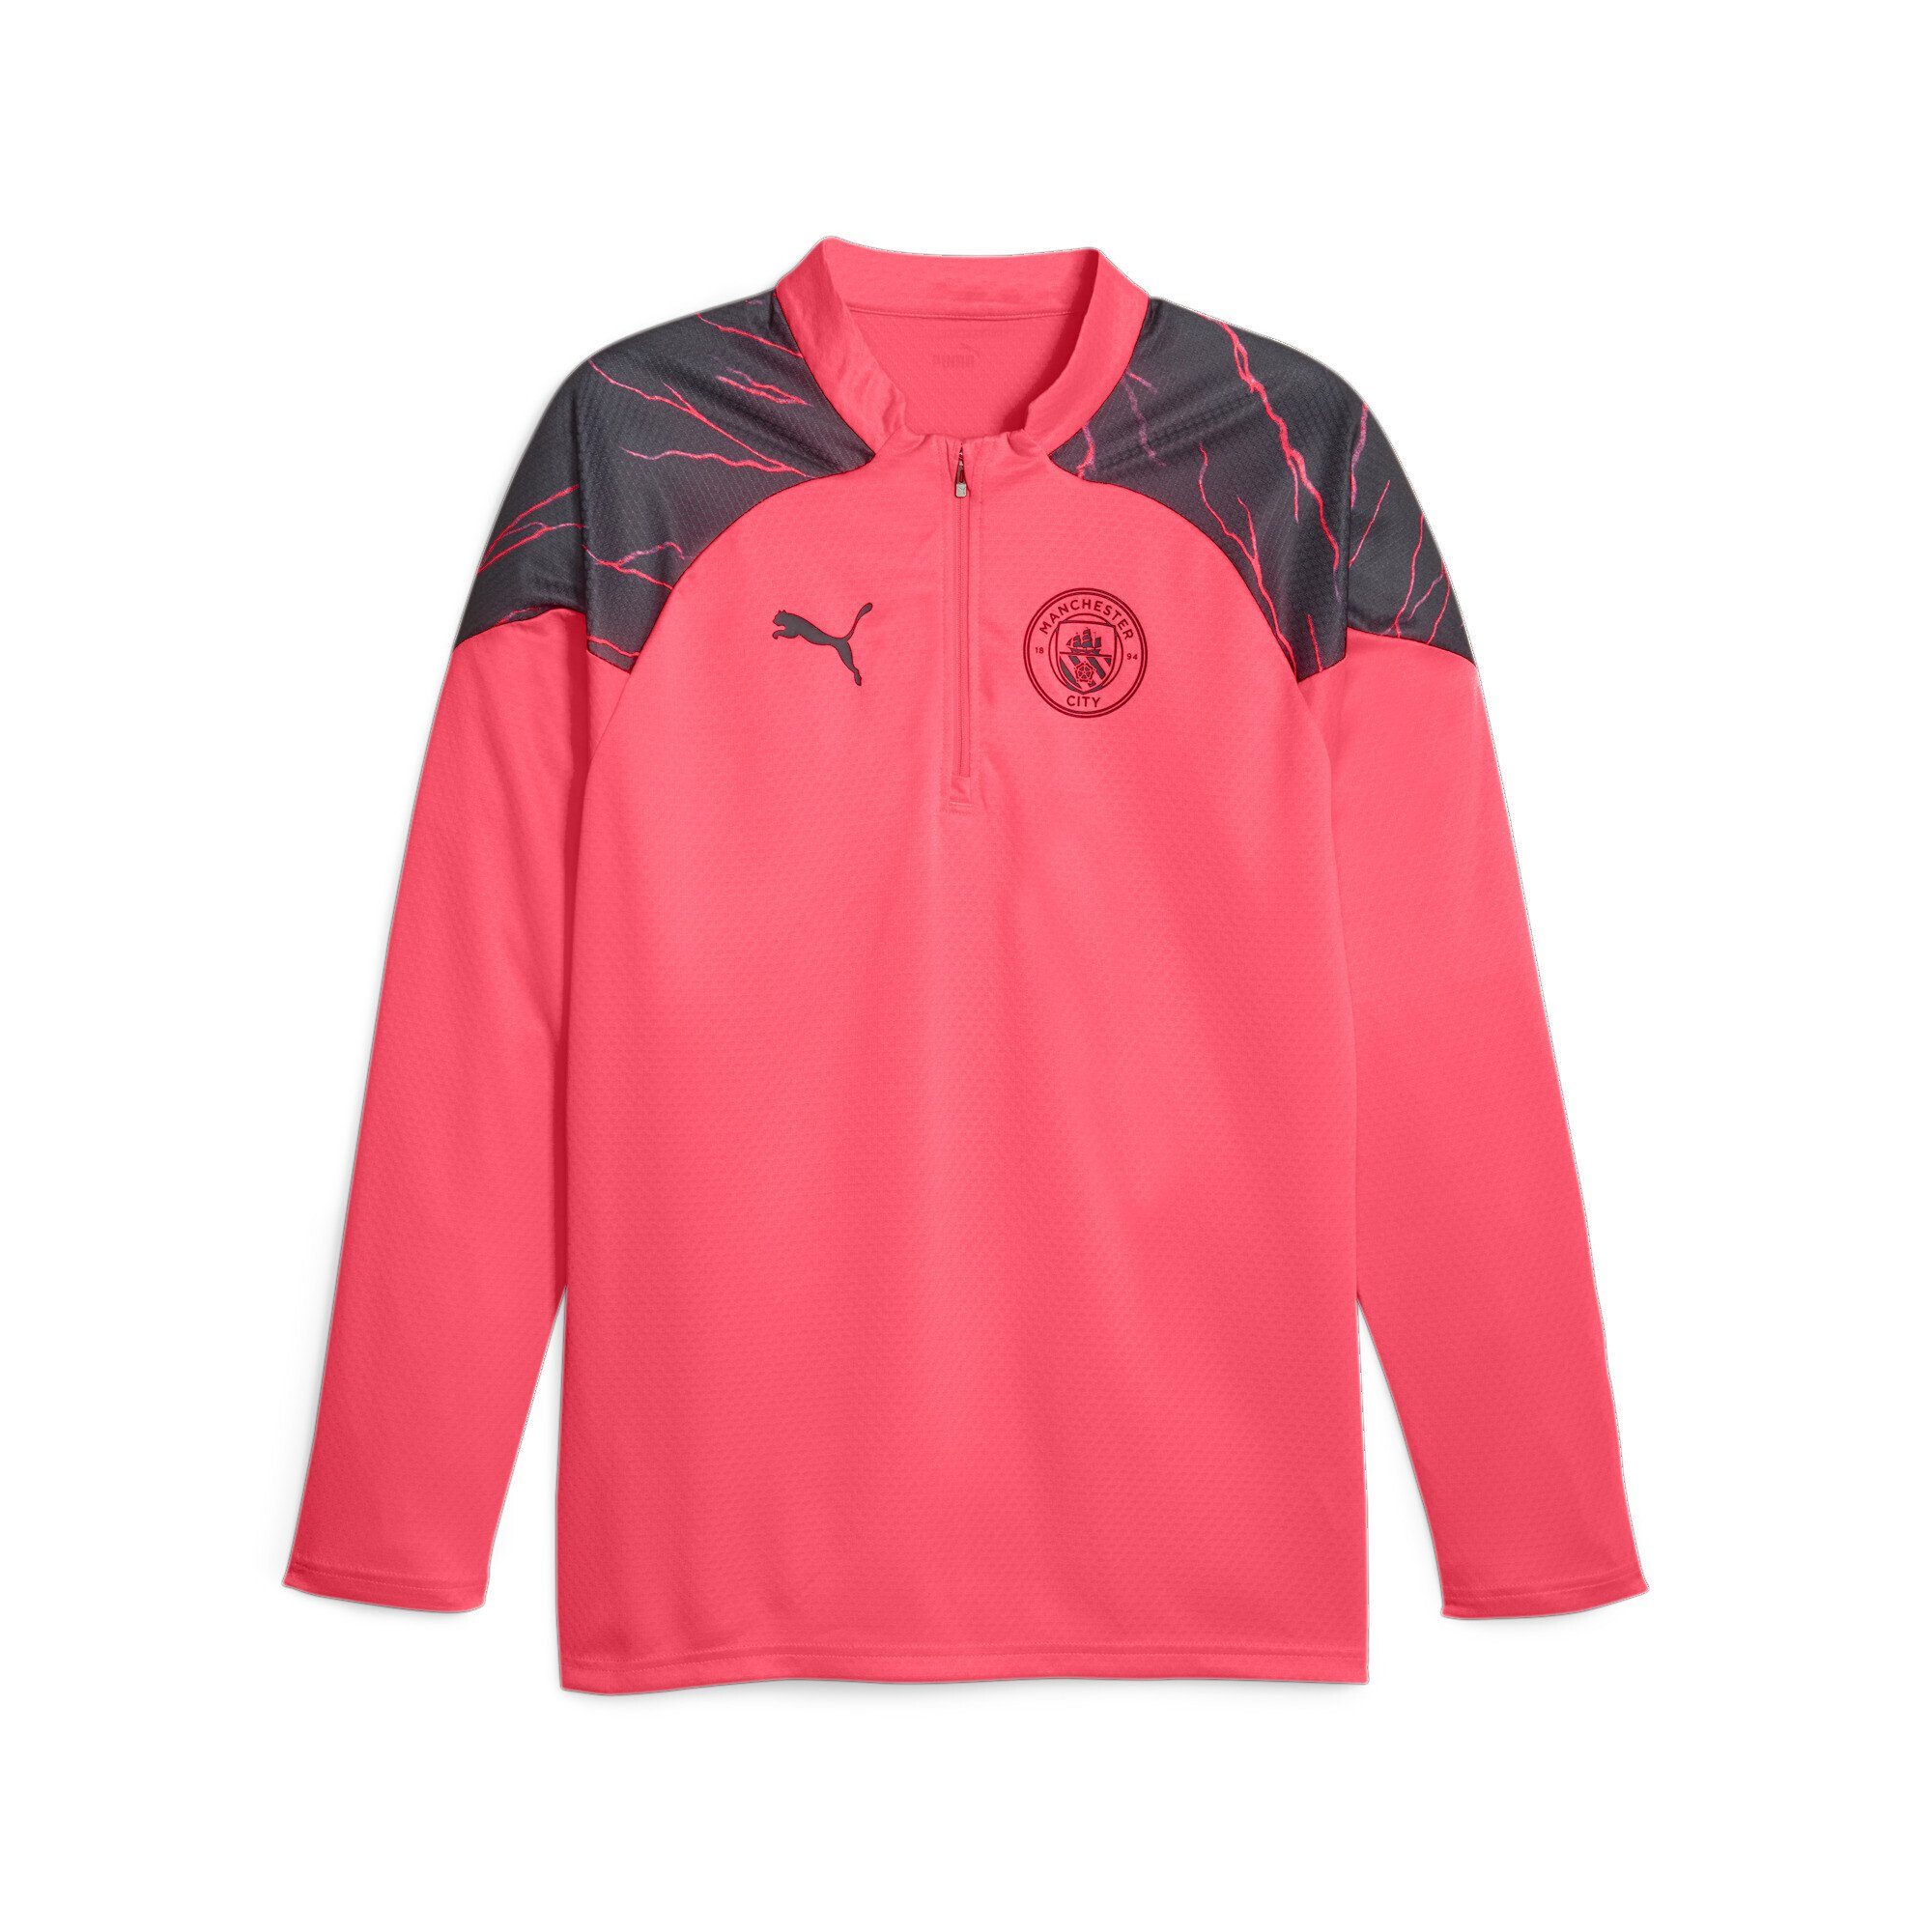 mit Trainingsshirt Sunset Glow Navy Dark PUMA Pink City Manchester Black Viertelreißverschluss Fußball-Trainings-Top